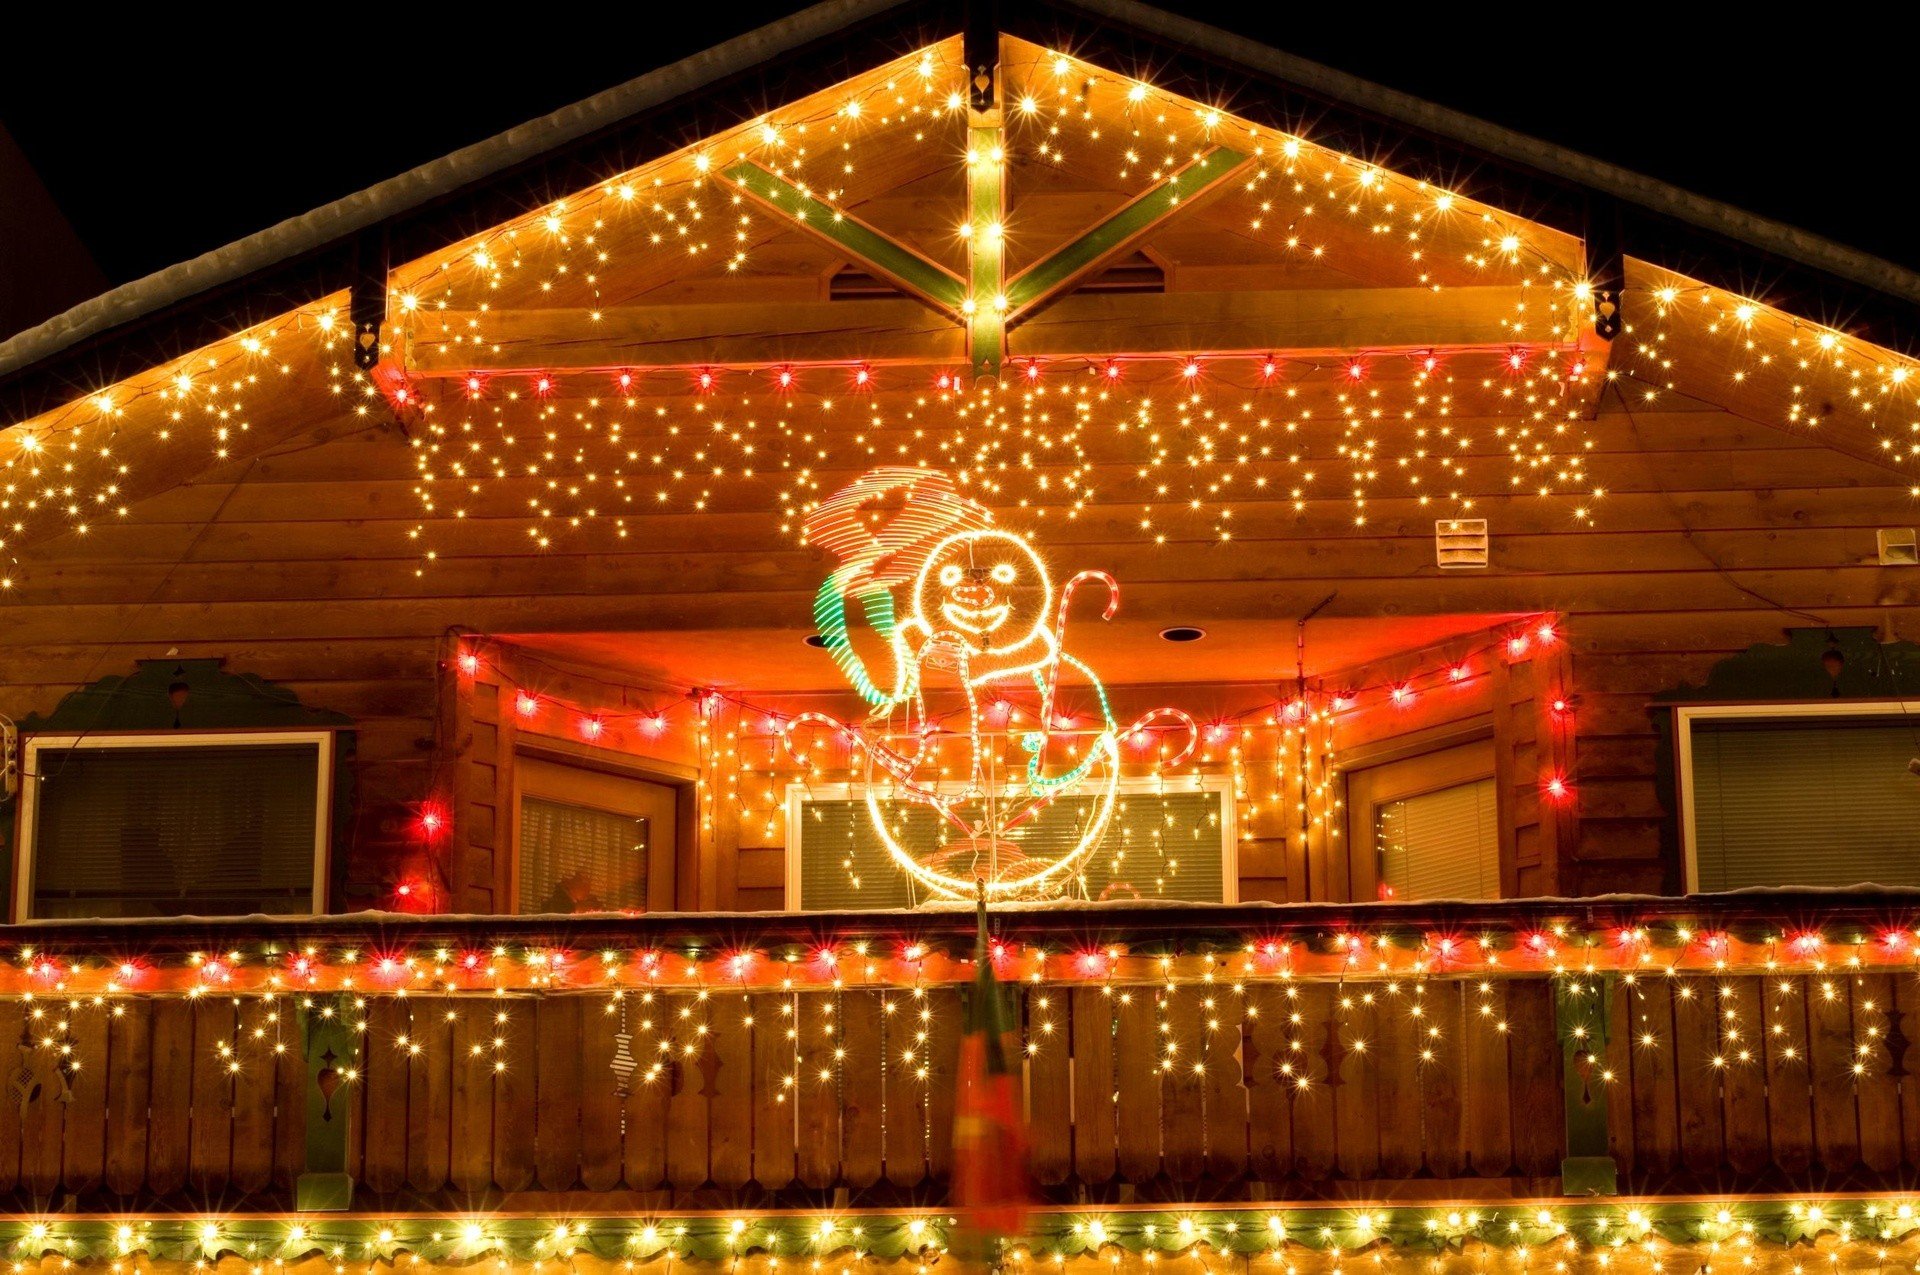 10 pomysłów na dekoracyjne oświetlenie domu i ogrodu na Święta. Jak  oświetlić dom na Boże Narodzenie? | Portal i.pl